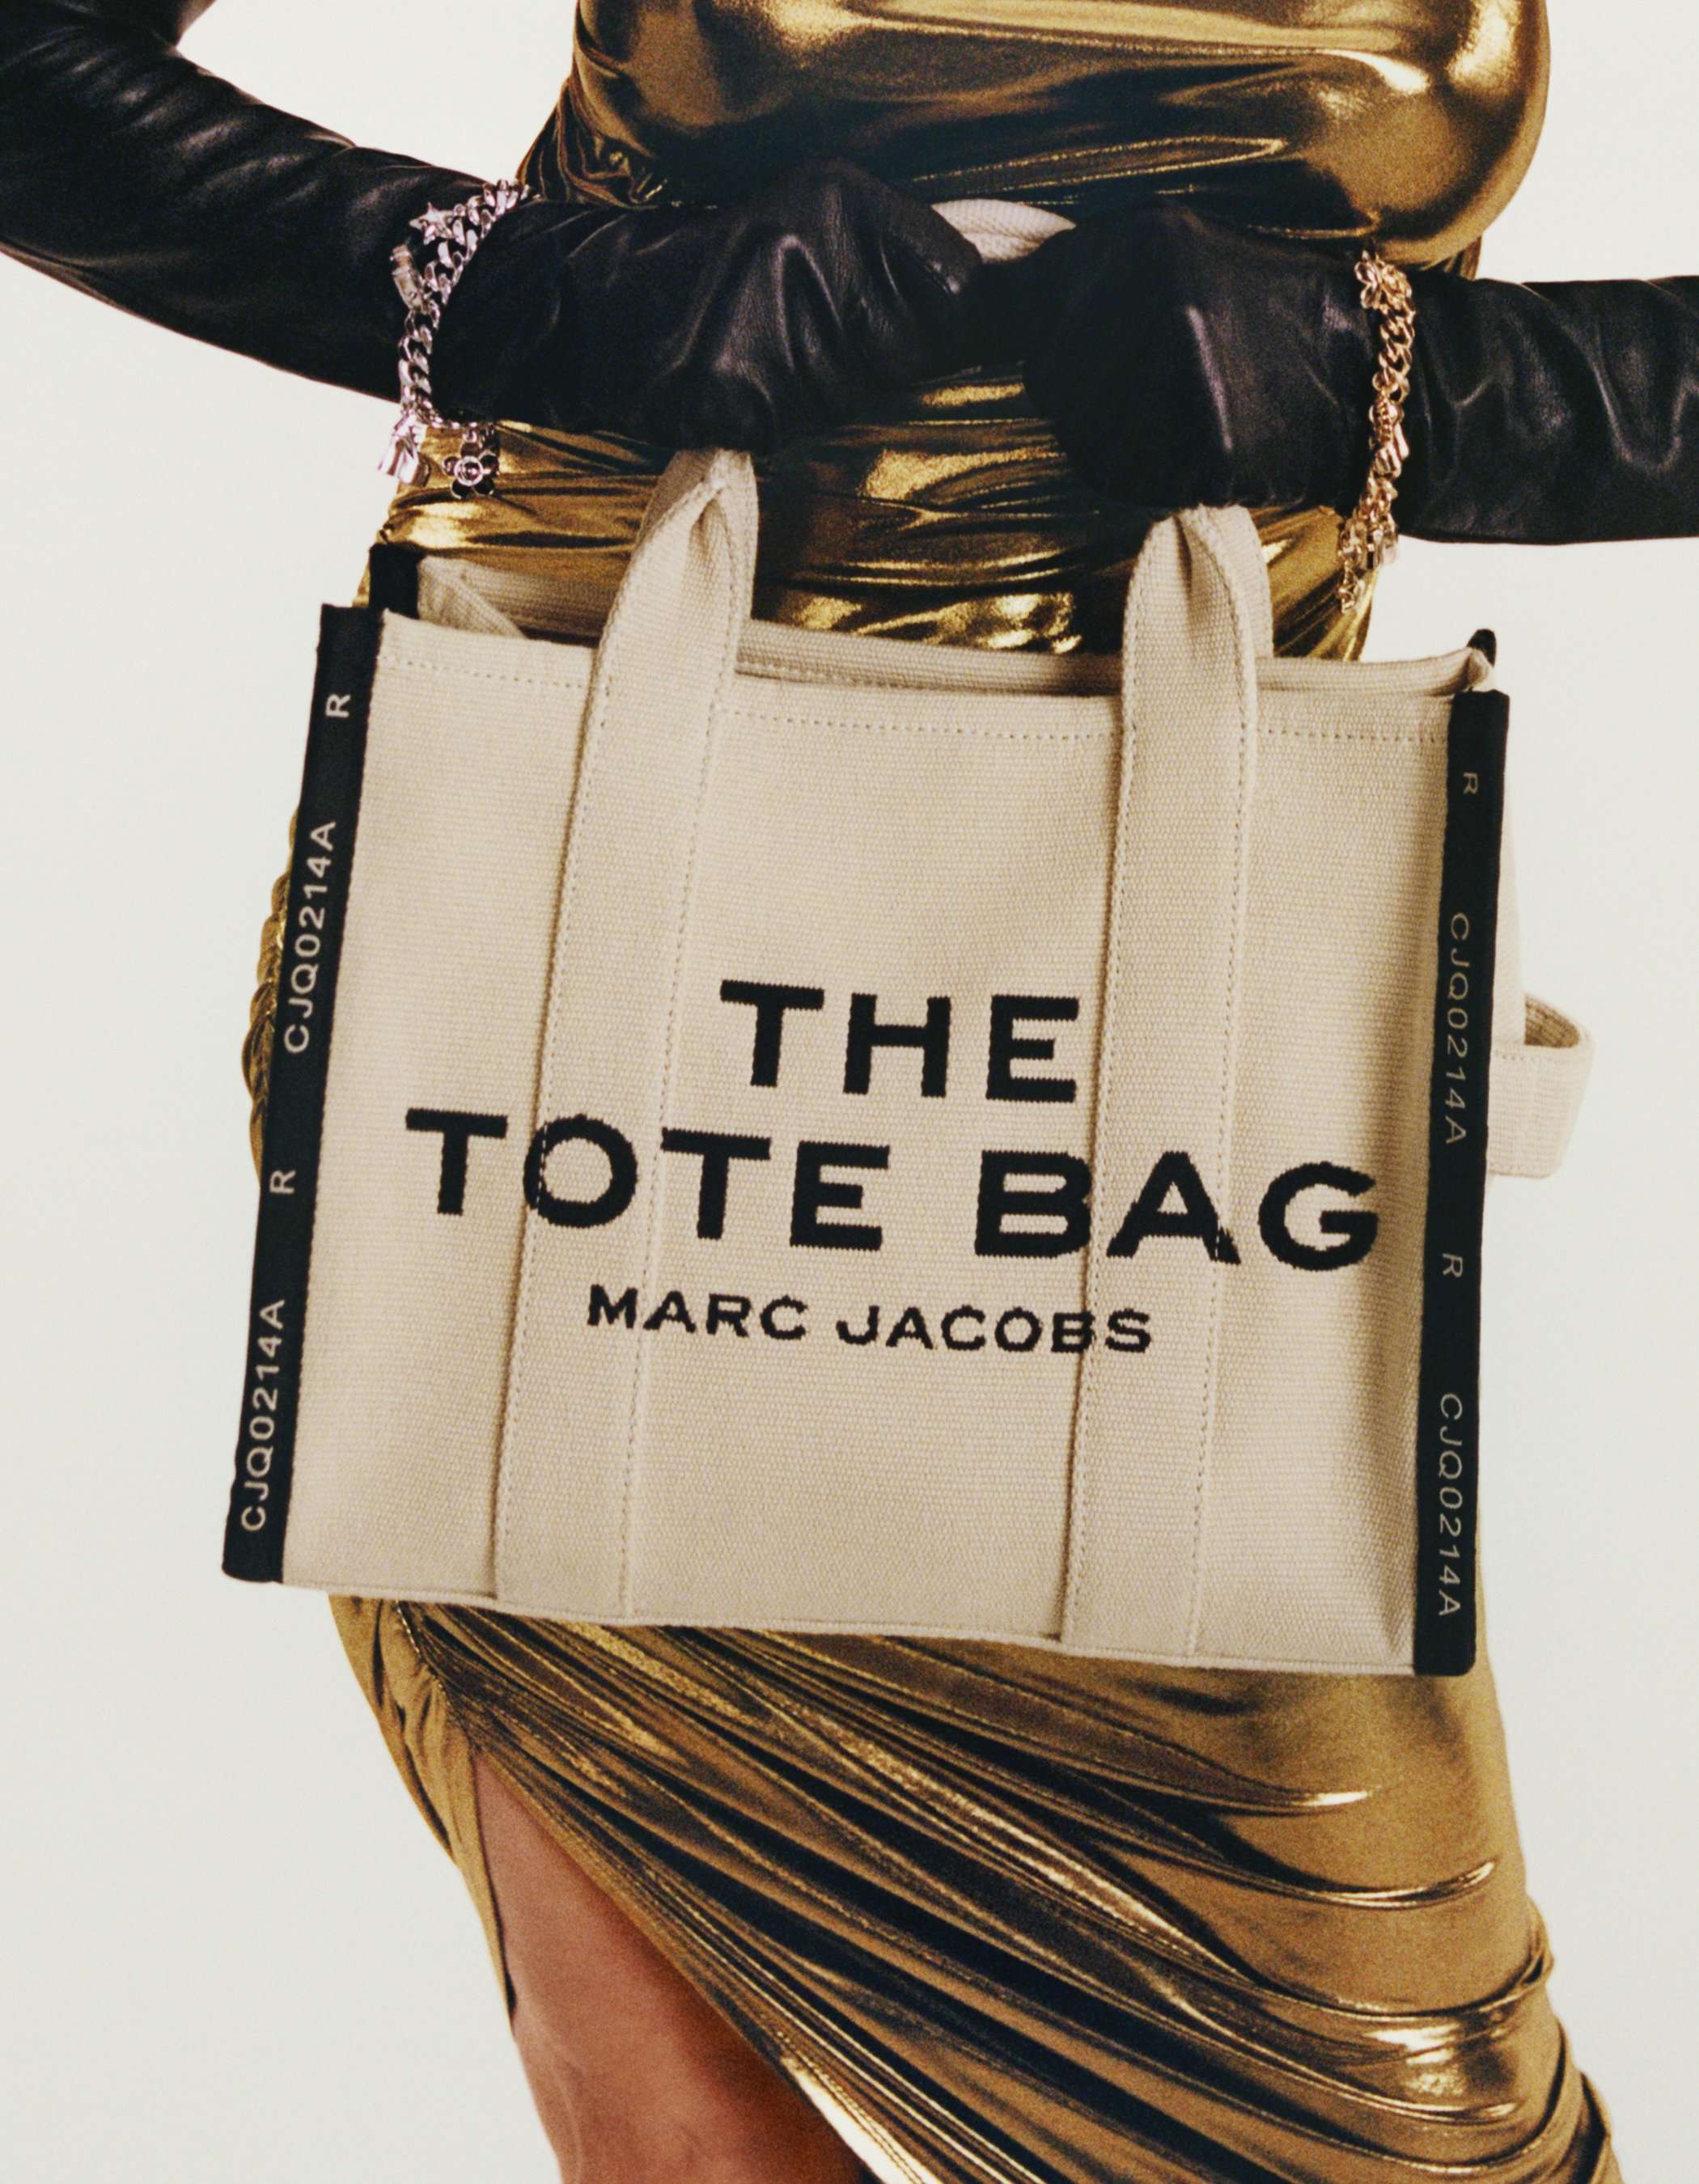 マーク ジェイコブス公式サイト | Marc Jacobs Online Store